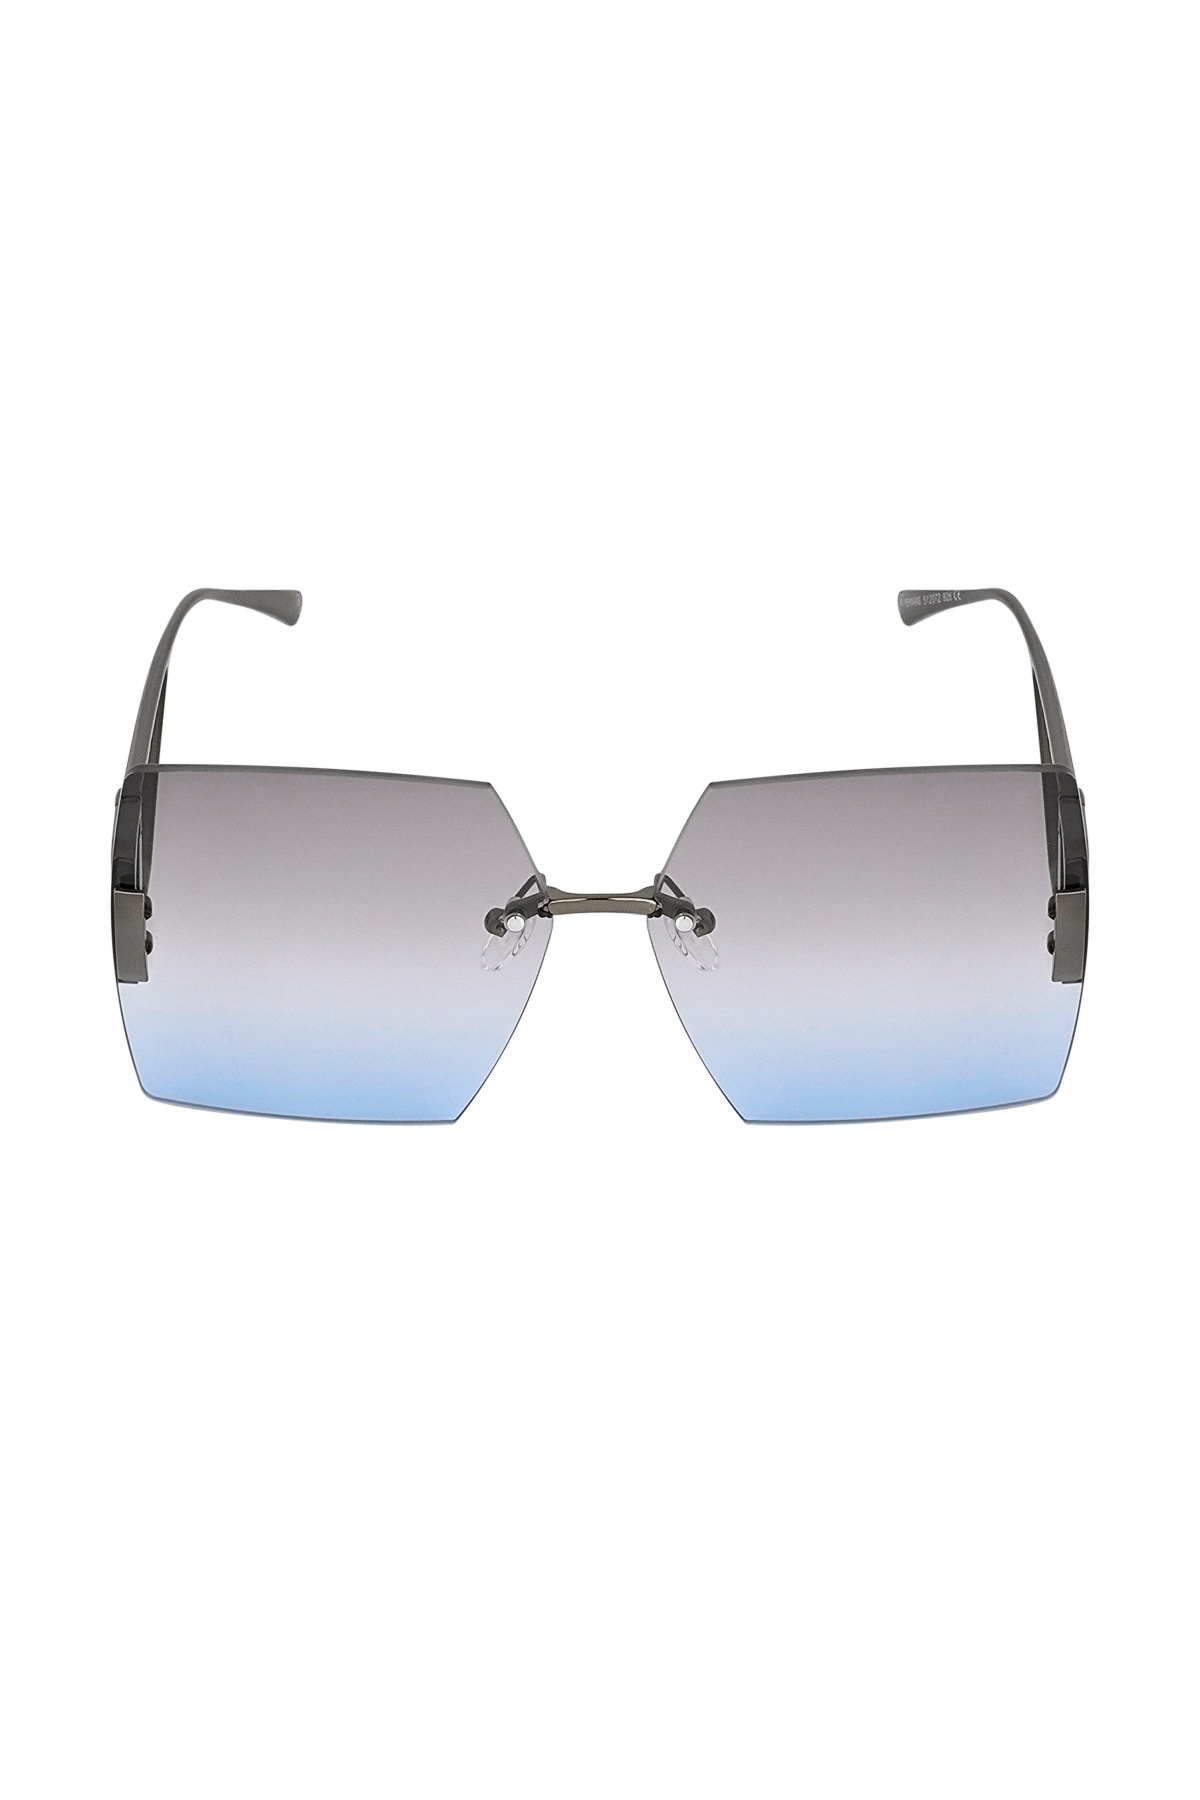 Rimless square sunglasses - blue h5 Picture2